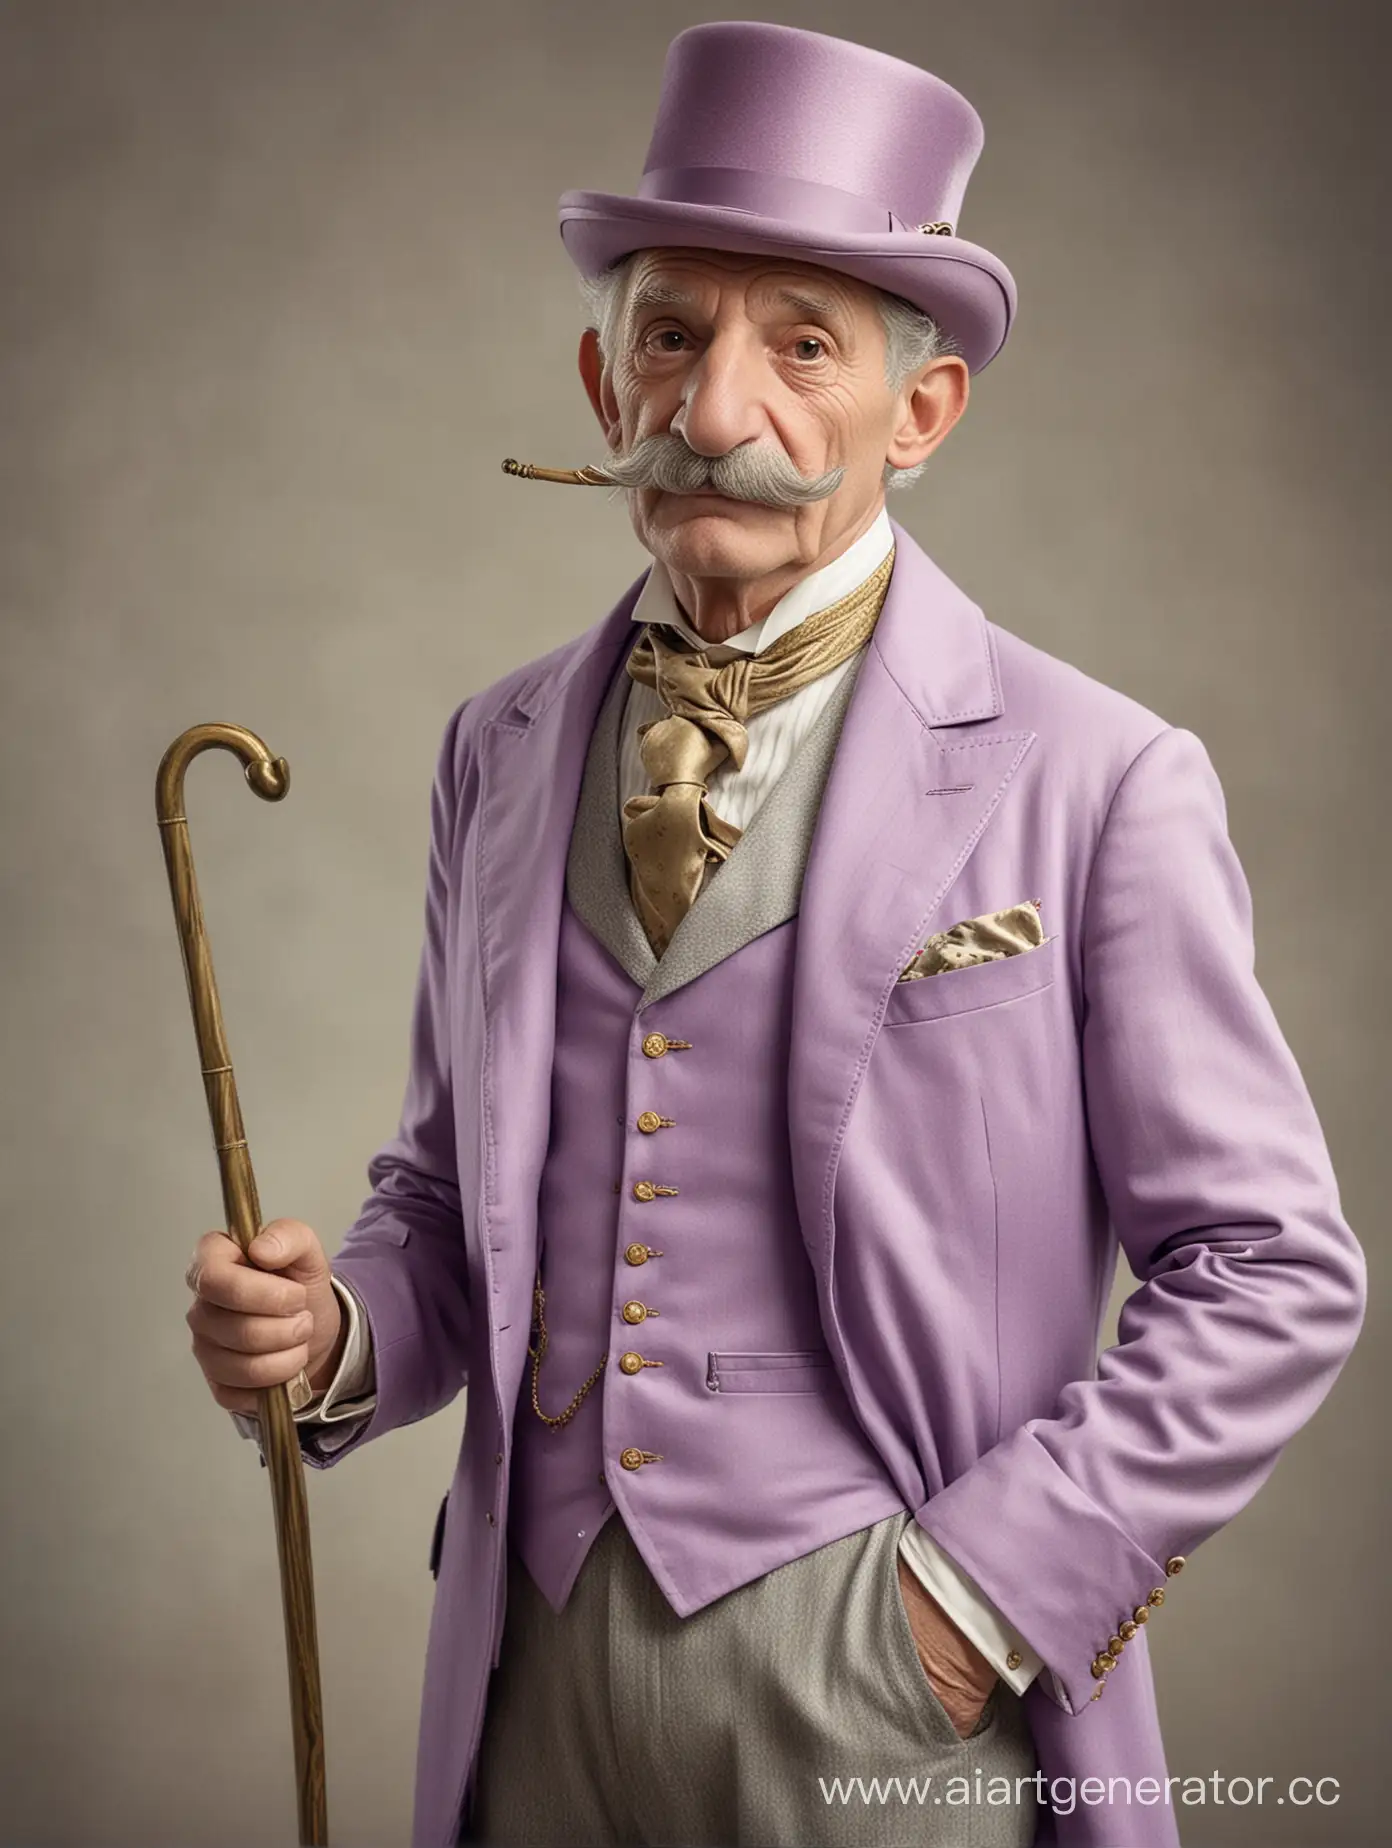 Elegant-Gentleman-in-LavenderPurple-Suit-with-Gold-Accessories